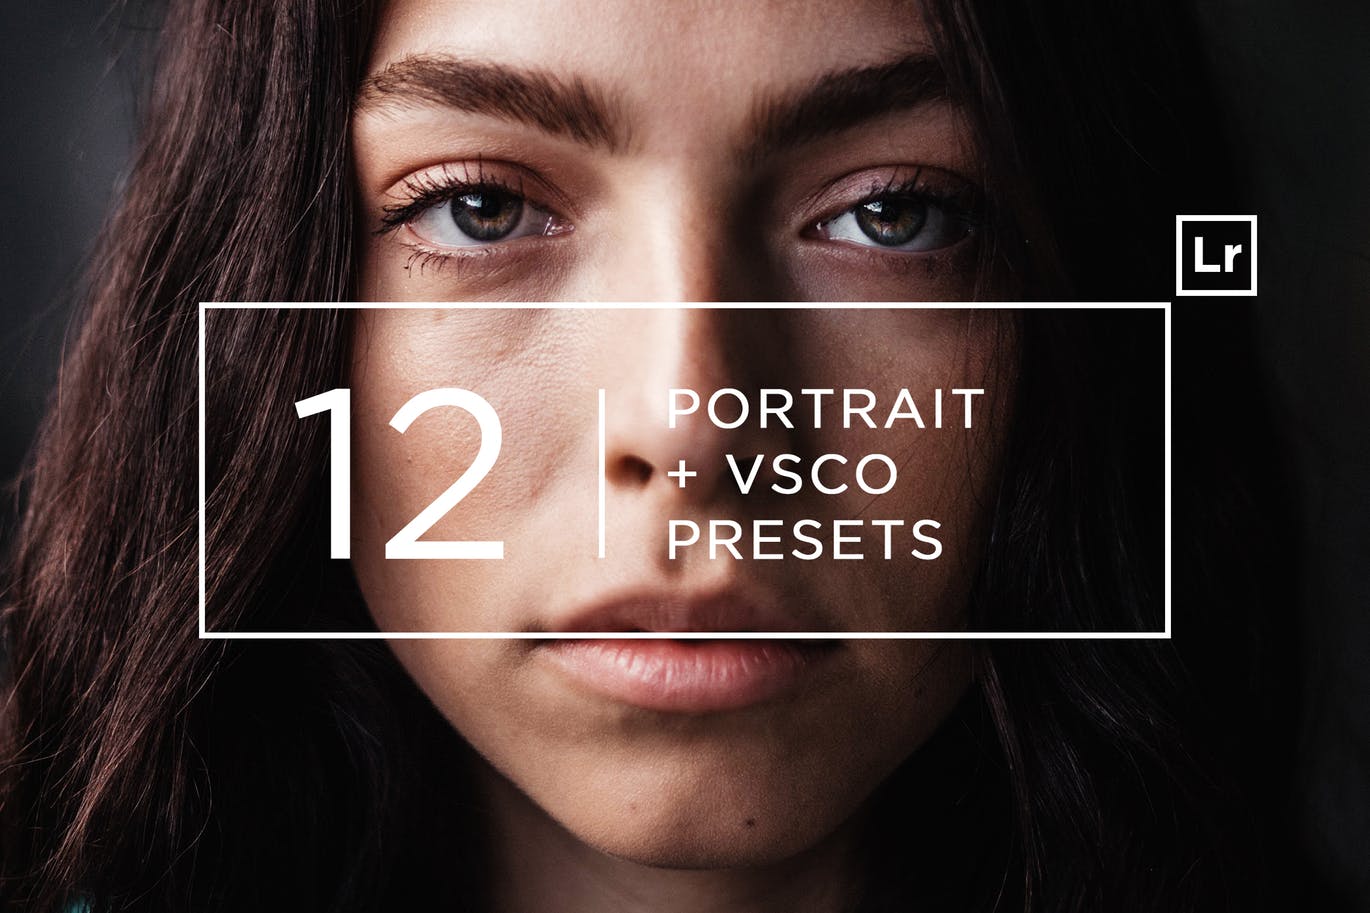 12款专业人像摄影美颜滤镜LR预设合集 12 Pro Portrait + VSCO Lightroom Presets插图